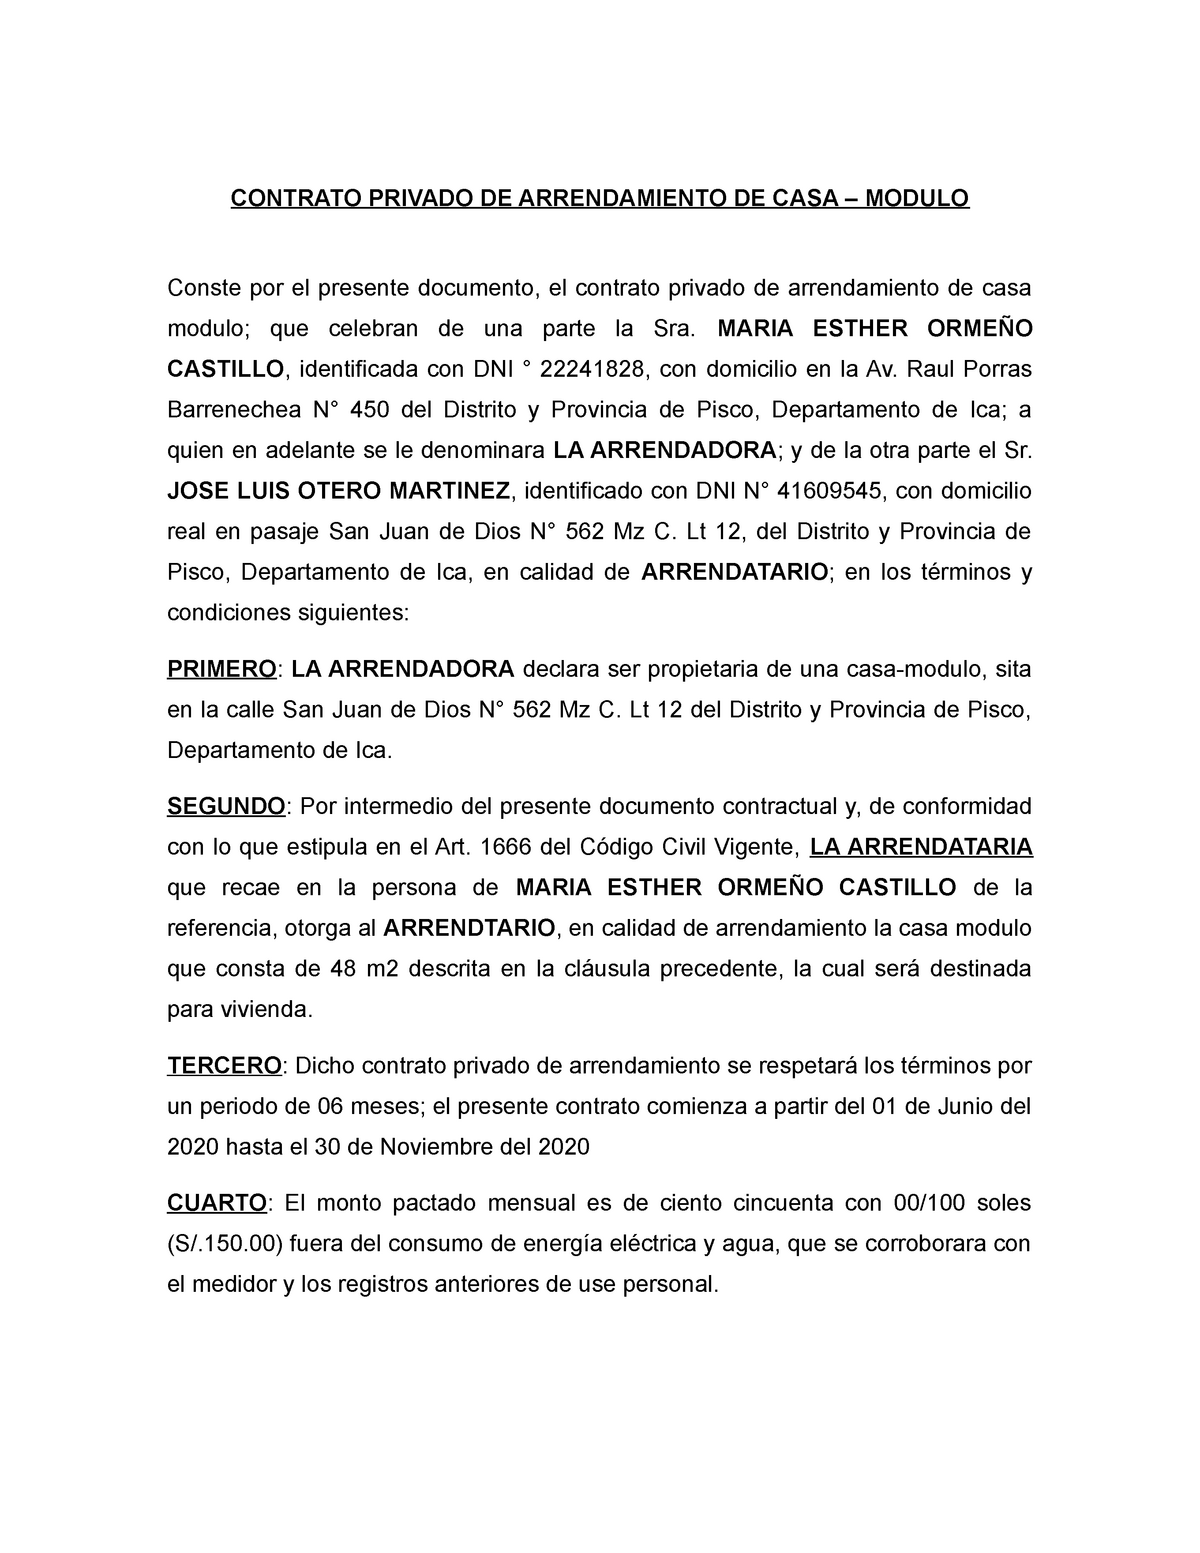 Modelo Contrato Privado DE Arrendamiento DE CASA - CONTRATO PRIVADO DE  ARRENDAMIENTO DE CASA – - Studocu